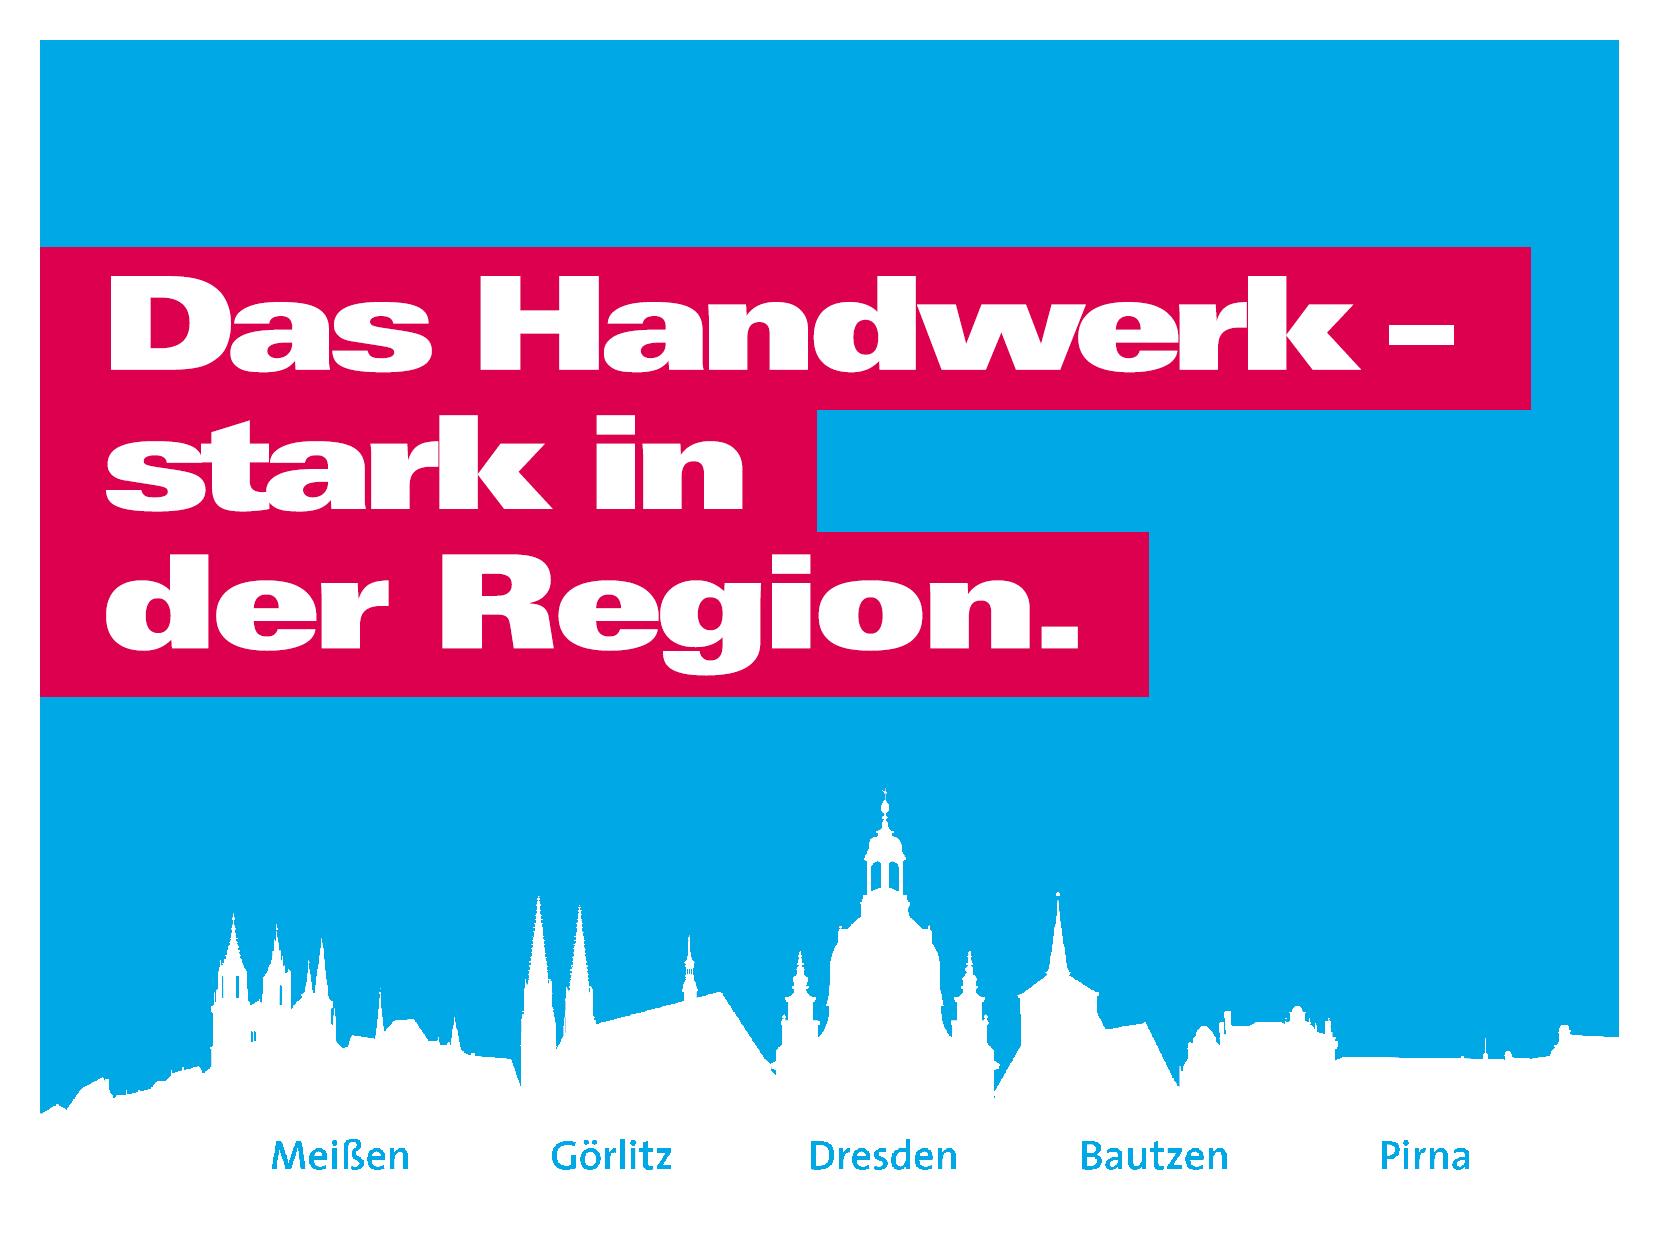 Hellblauer Hintergrund, unten eine Grafik mit einer Silhouette von Sehenswürdigkeiten Meißen, Görlitz, Dresden, Bautzen, Pirna. Darüber der Spruch in weiß auf rotem Hintergrund \"Das Handwerk – stark in der Region.\"